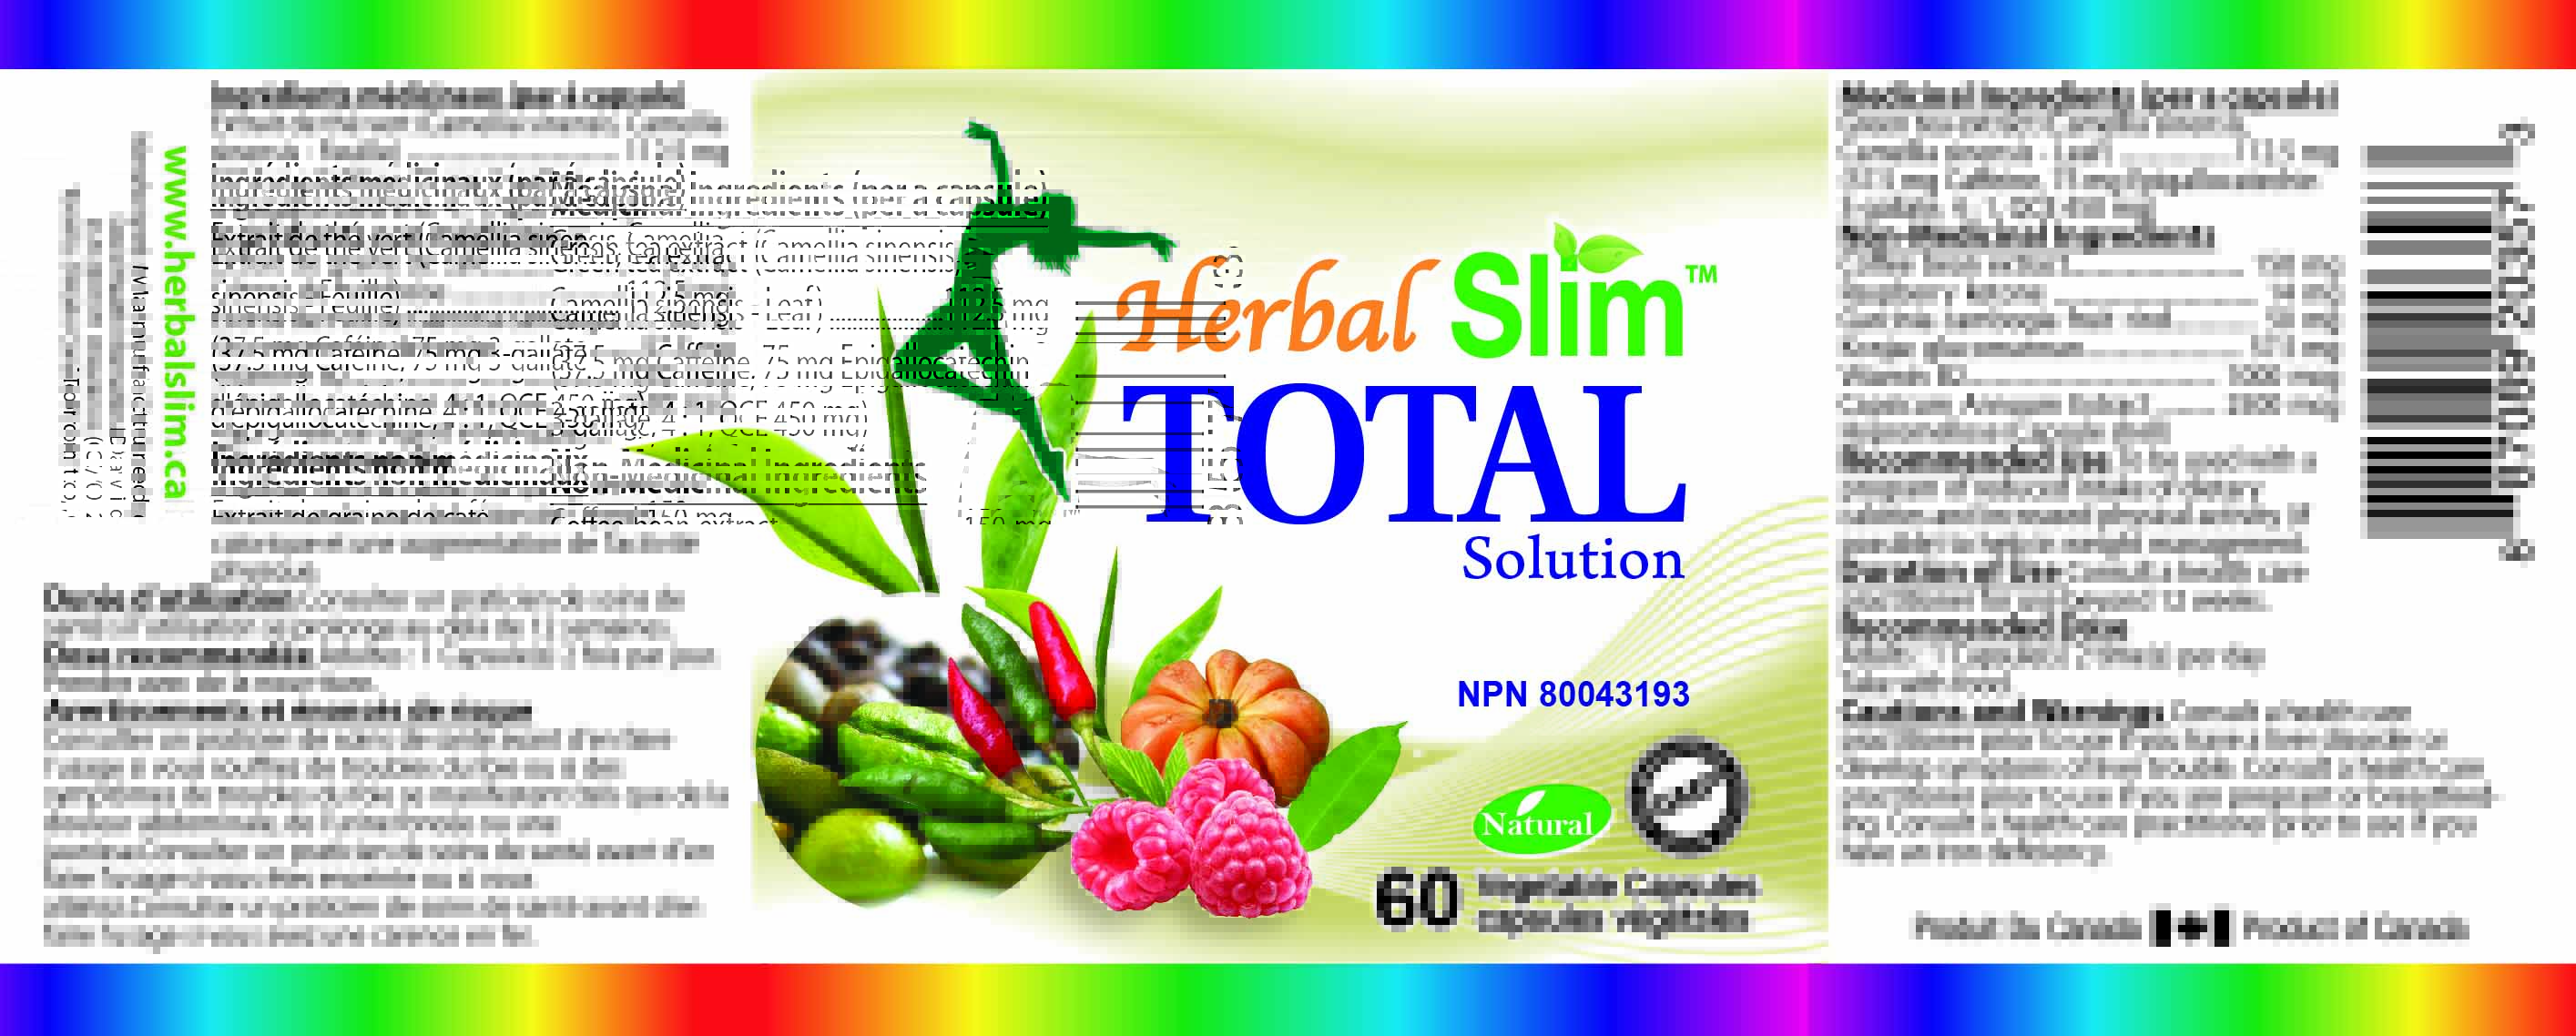 Herbal SLIM TOTAL SOLUTION